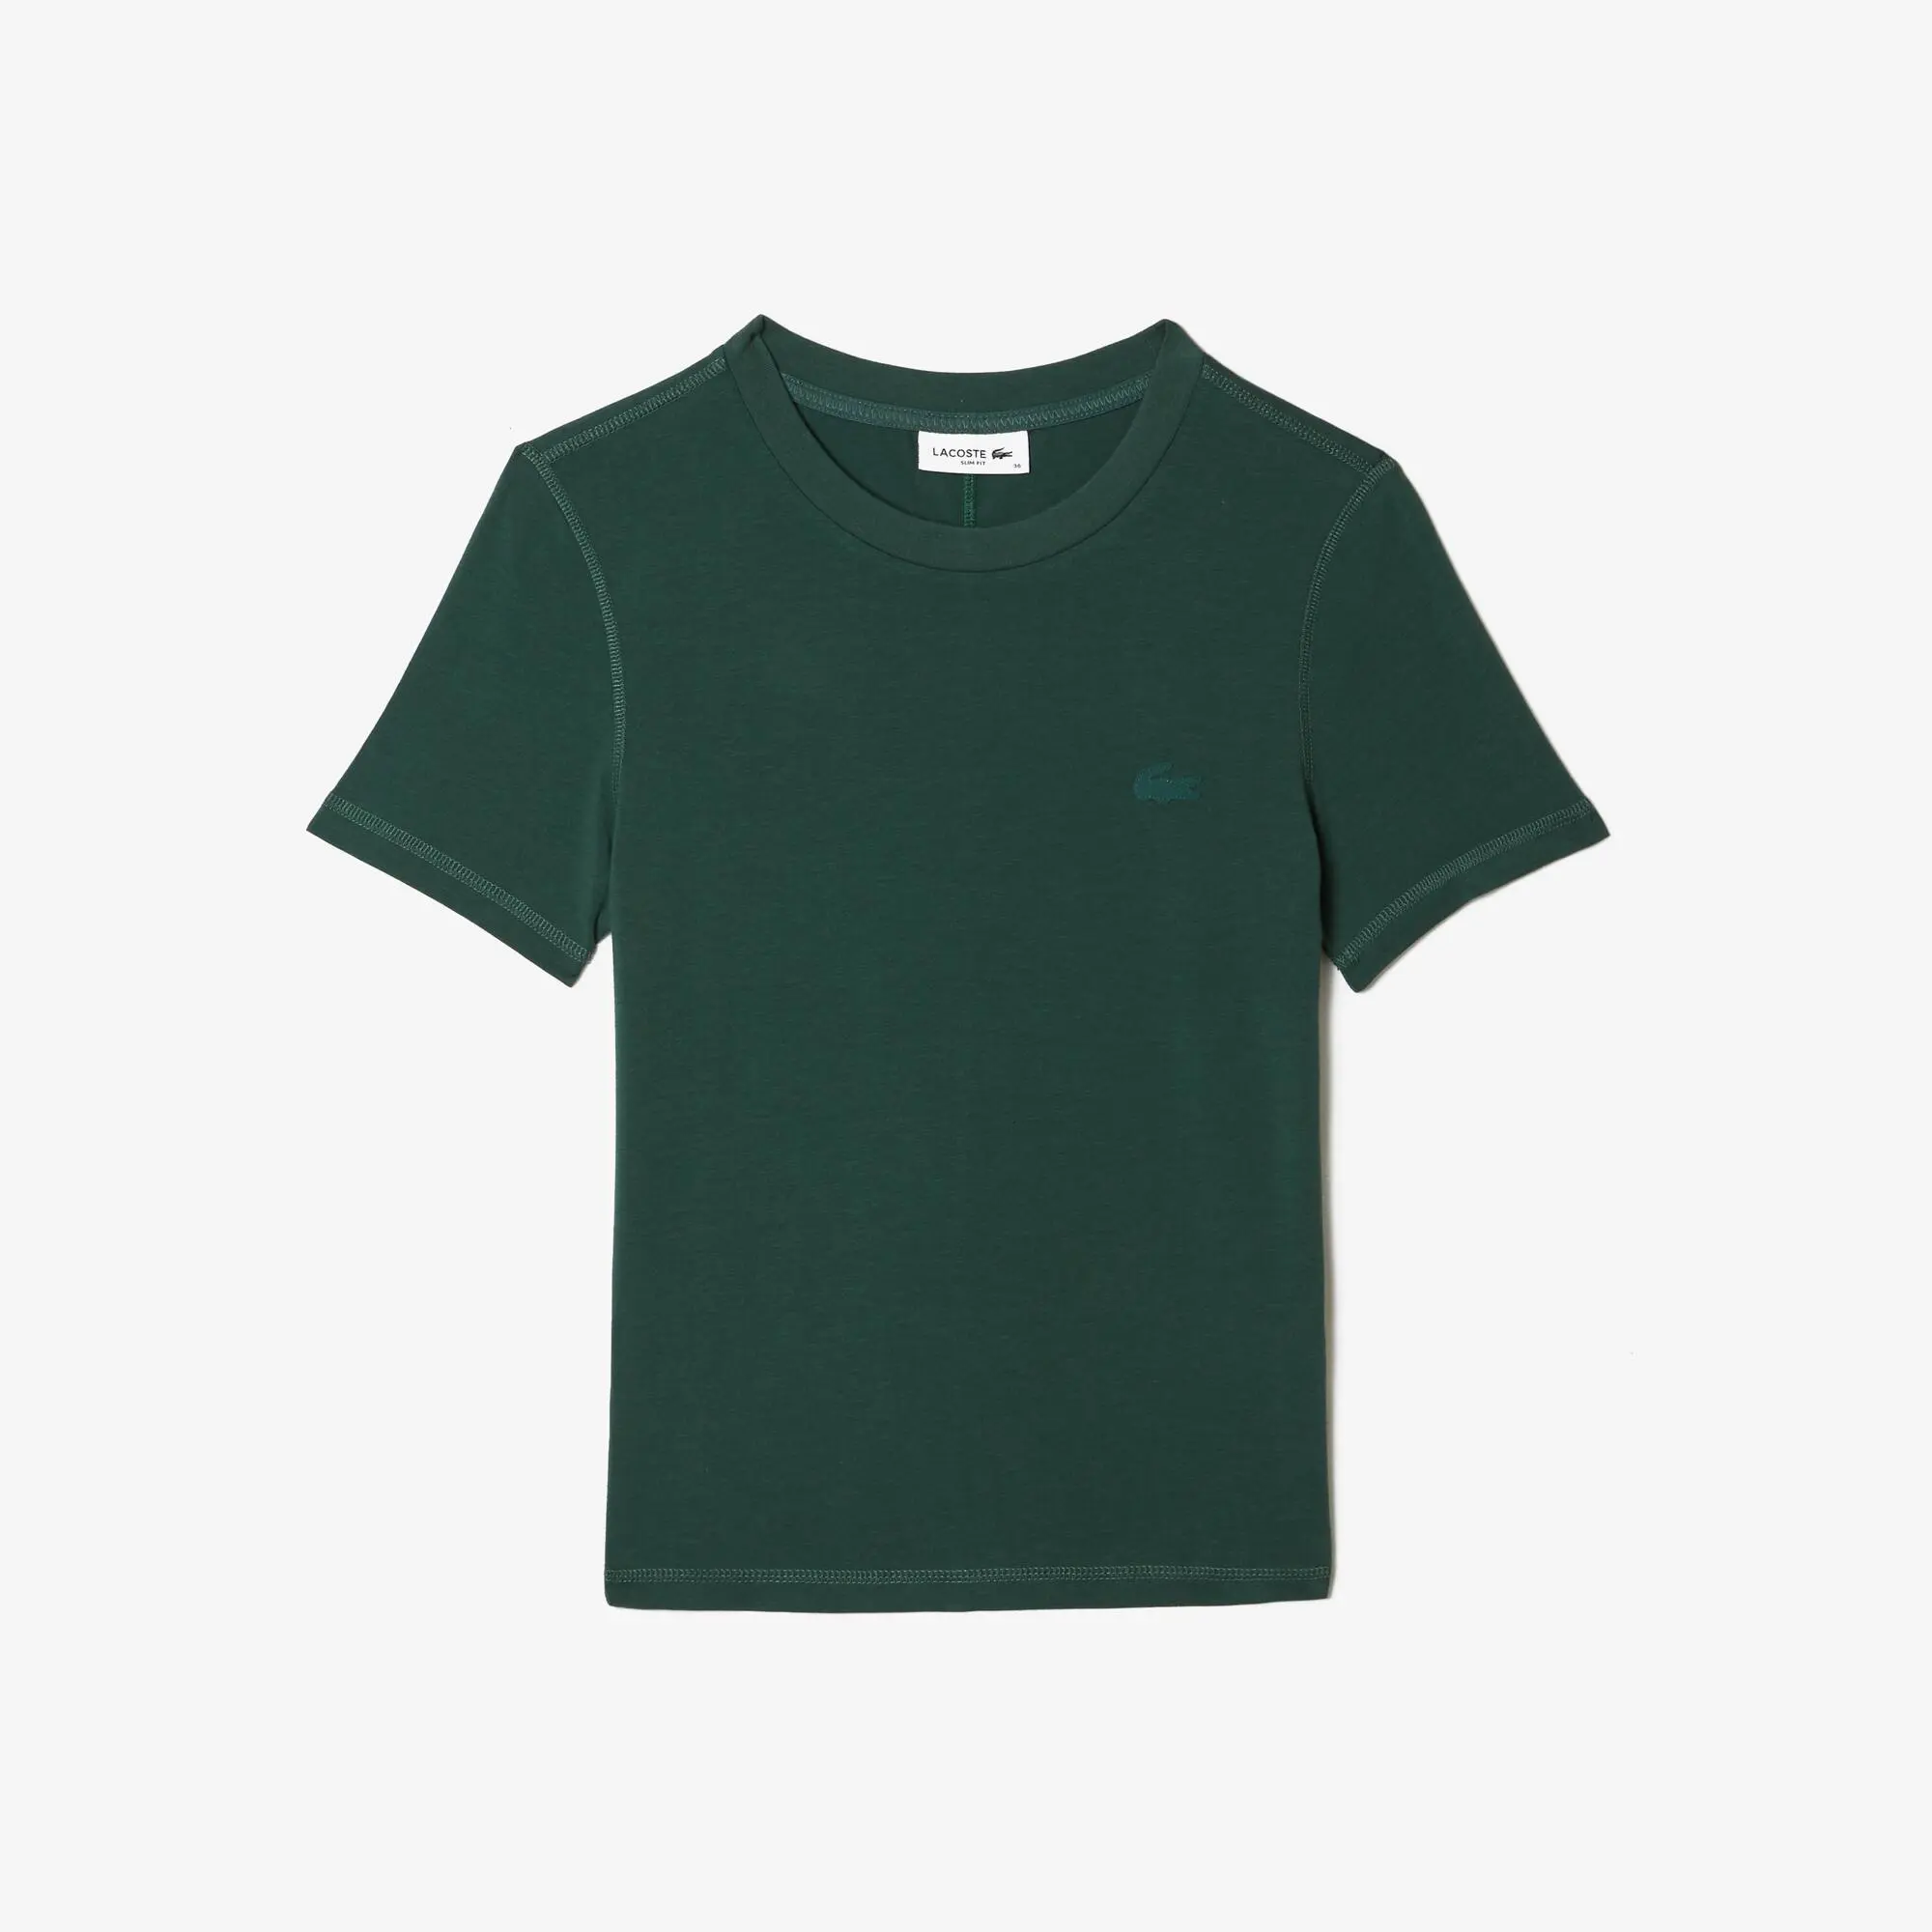 Lacoste Women’s Slim Fit Crew Neck Cotton Blend T-shirt. 2